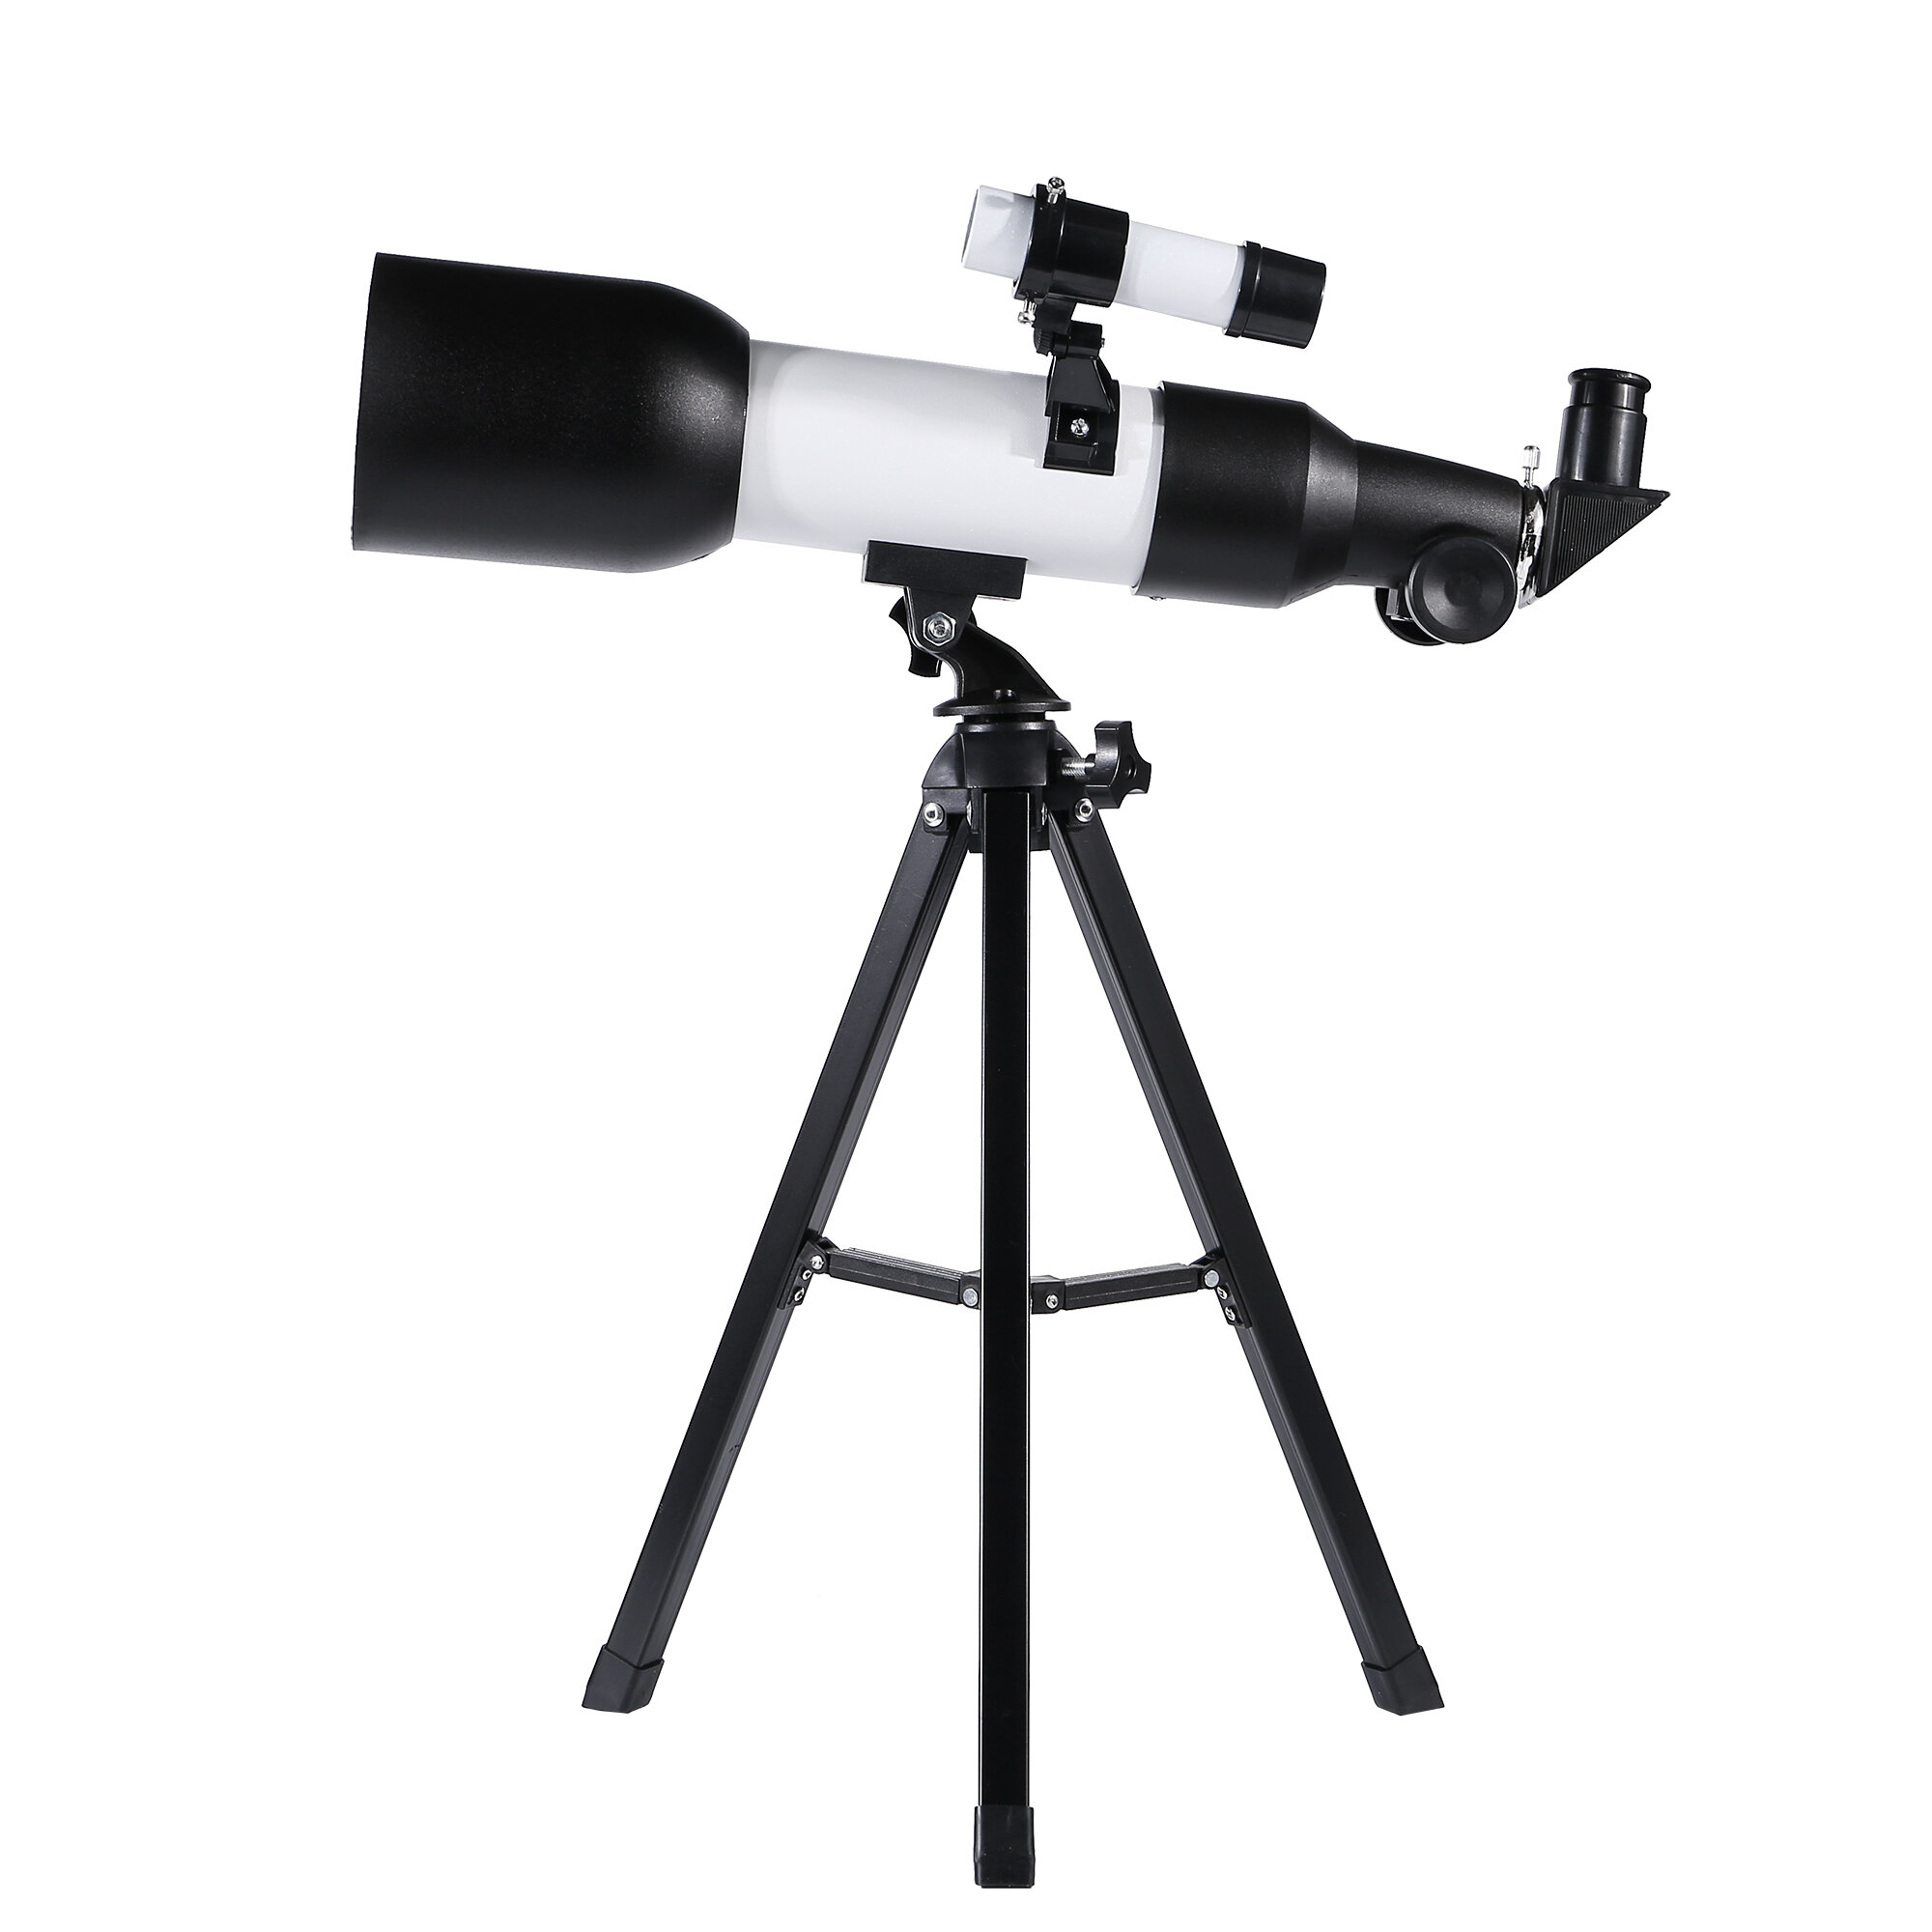 Telescopio astronomico professionale HD Eyebre 120x per bambini con visione notturna a bassa luminosità e treppiede per l'osservazione dello spazio profondo.